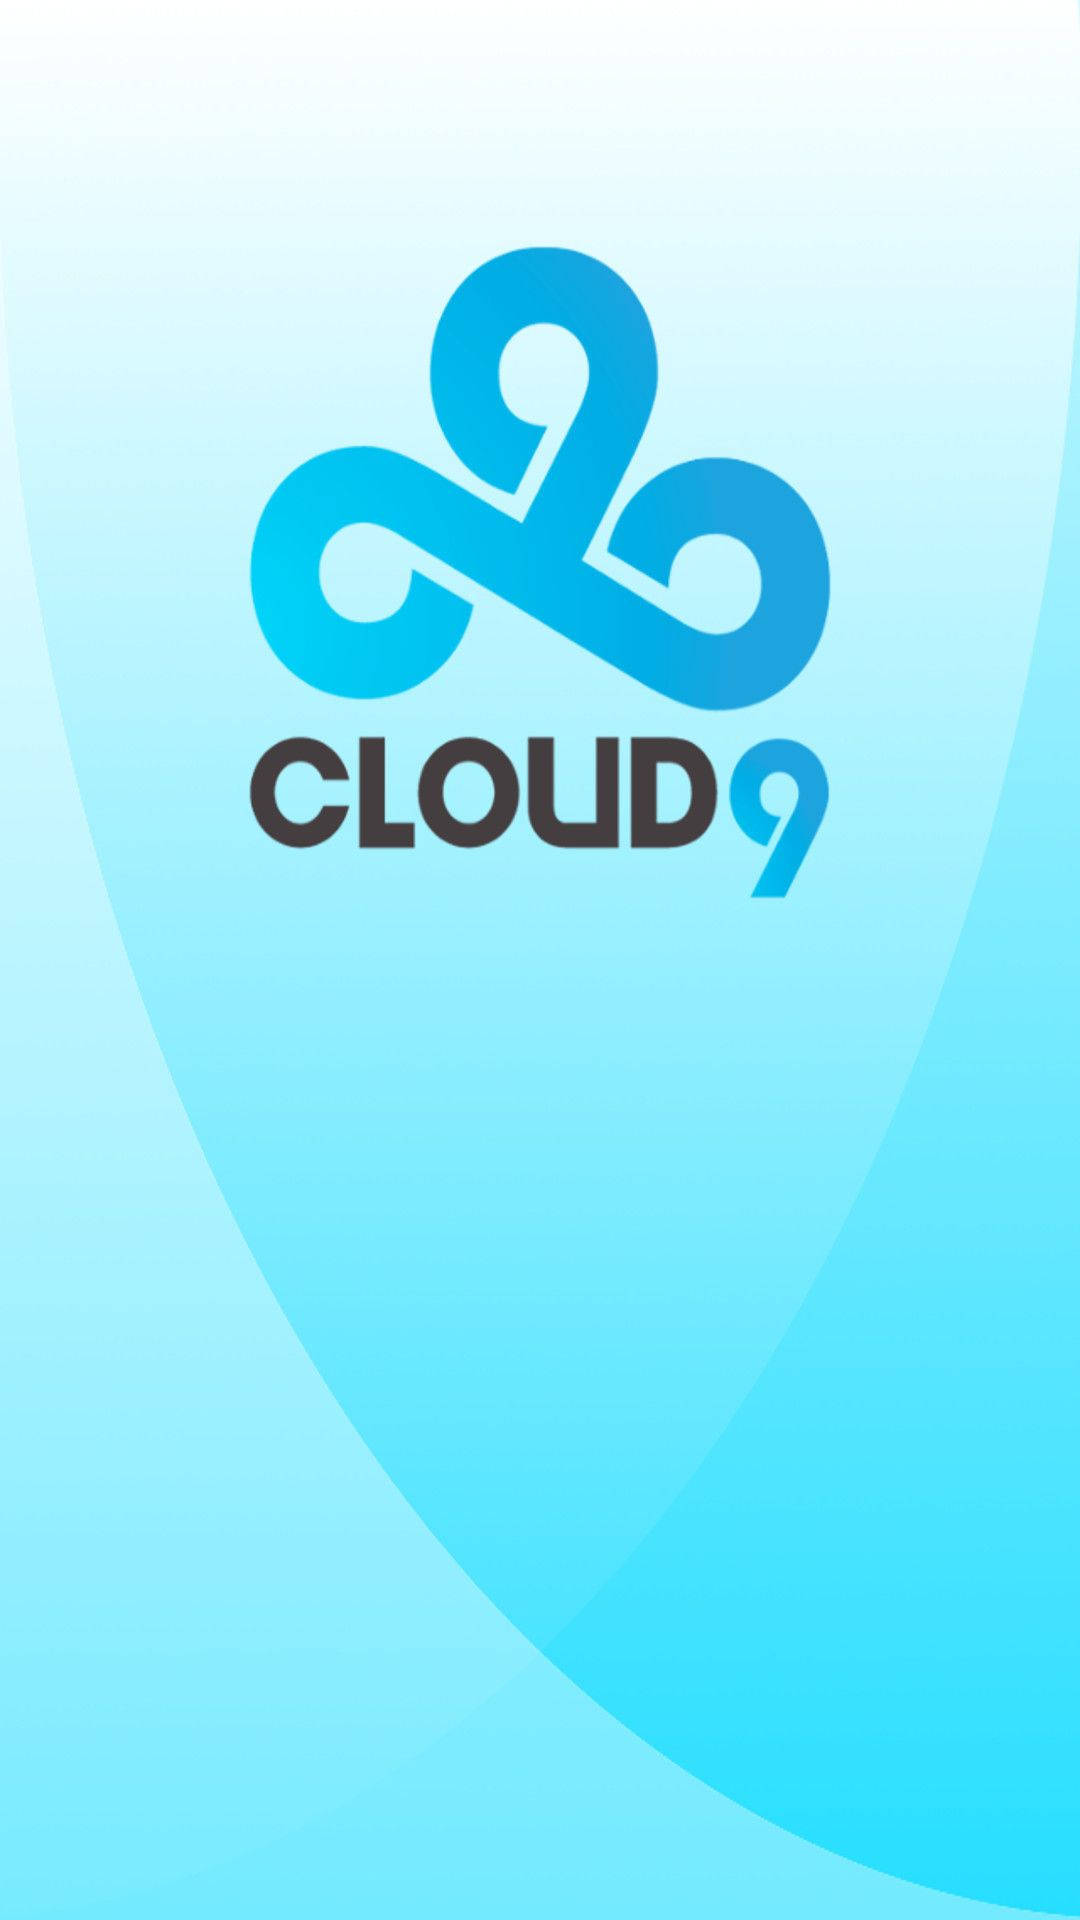 Cloud9 Logo Light Blue Texture Wallpaper